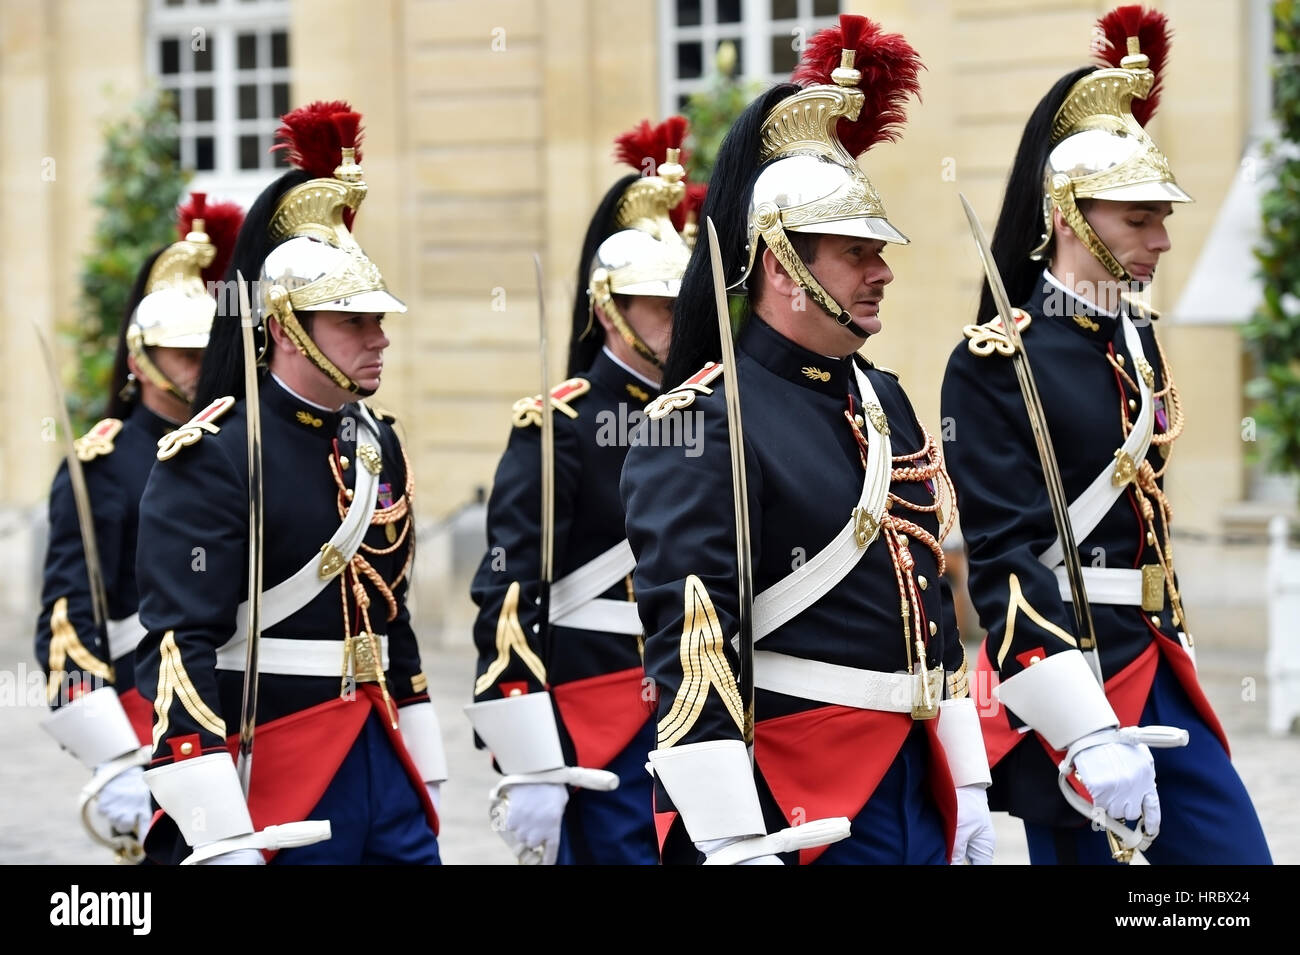 PARIS, FRANCE - Le 10 juin : l'Hôtel Matignon Garde républicaine d'honneur au cours d'une cérémonie d'accueil le 10 juin 2016 à Paris. Matignon est le fonctionnaire resid Banque D'Images